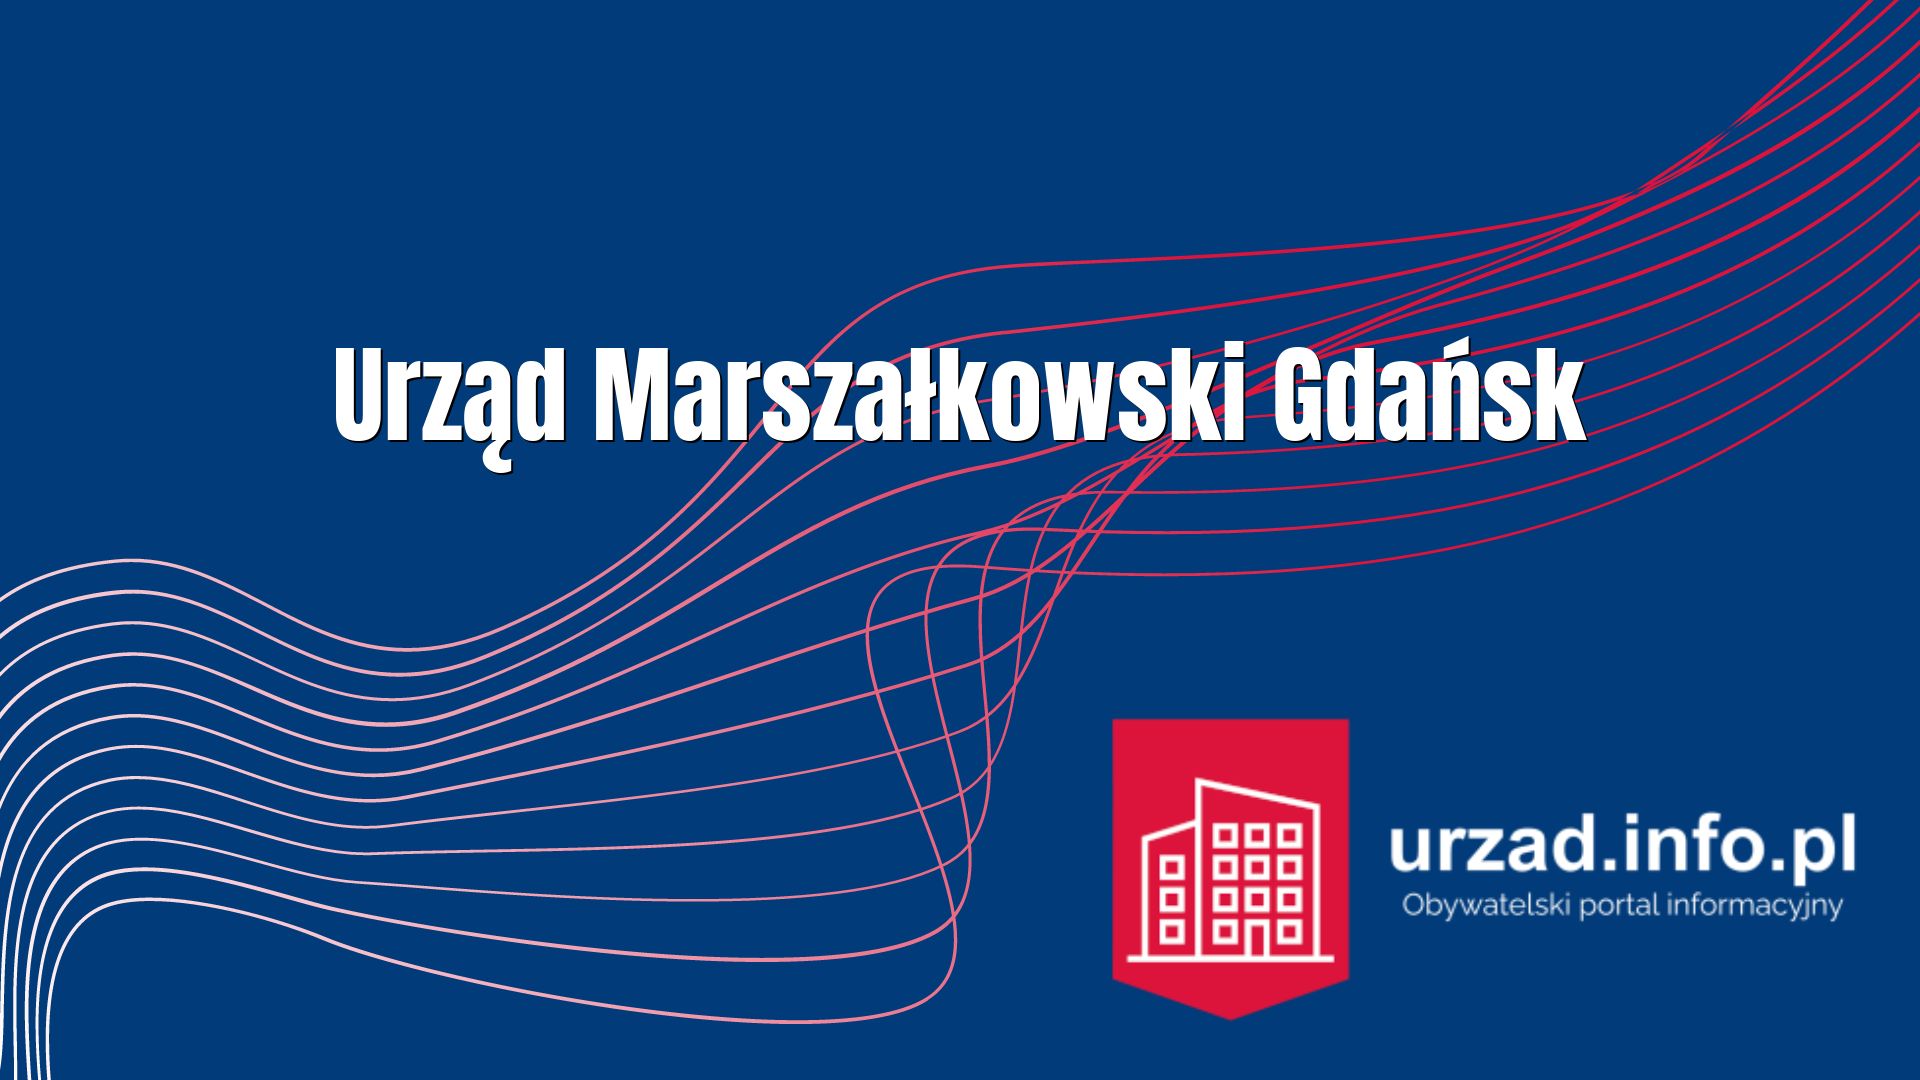 Urząd Marszałkowski Gdańsk